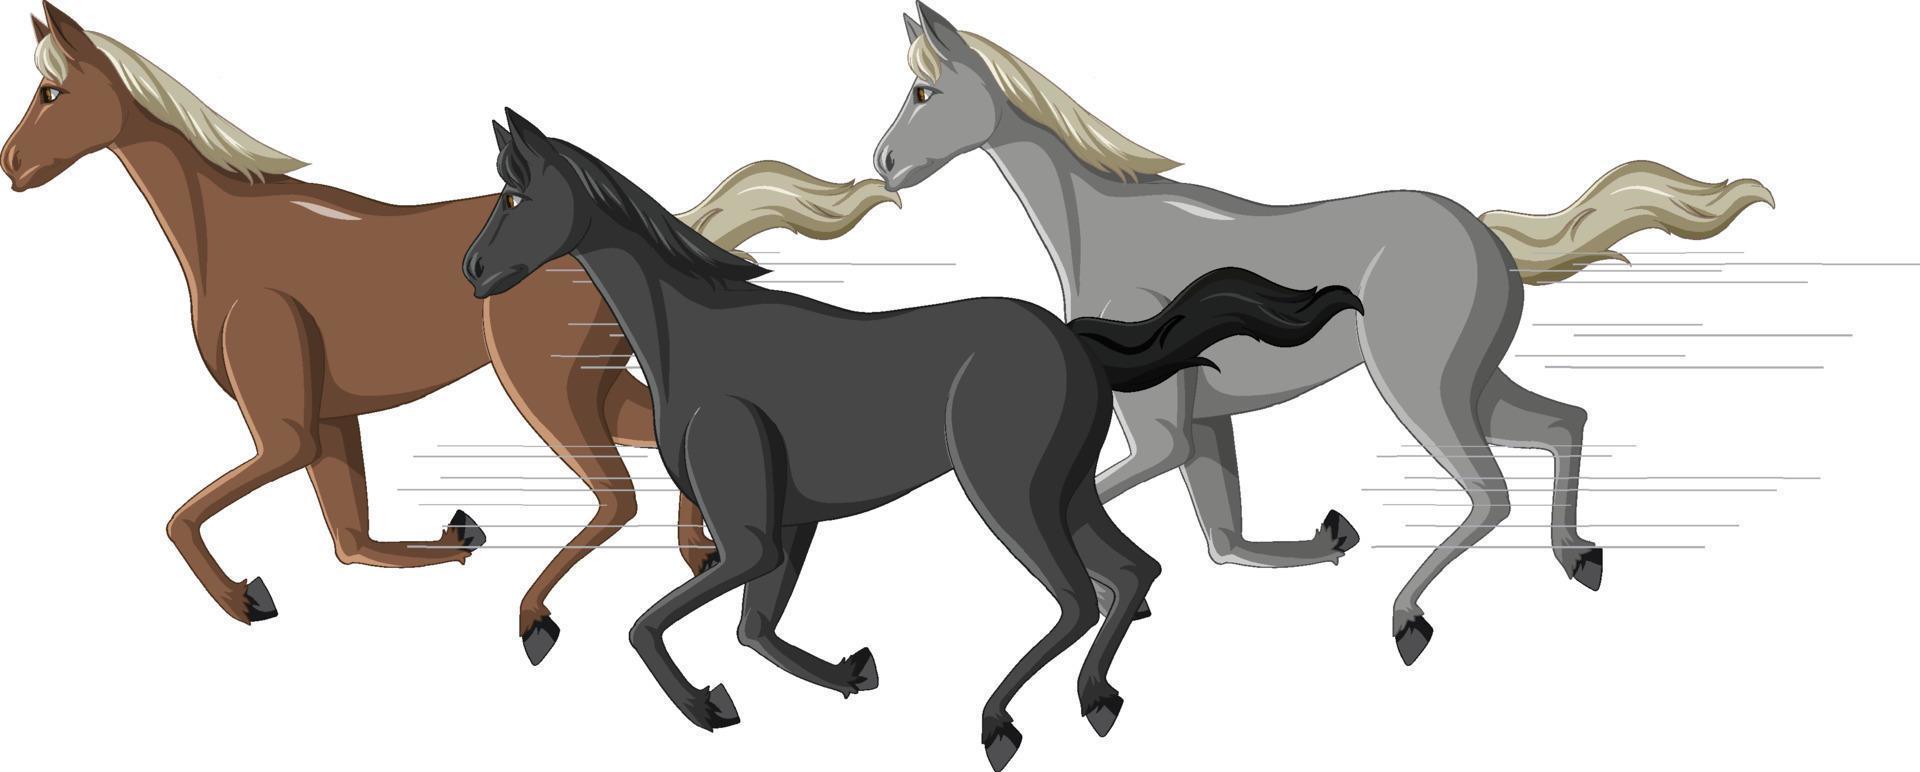 groupe de chevaux en cours d'exécution dessin animé vecteur